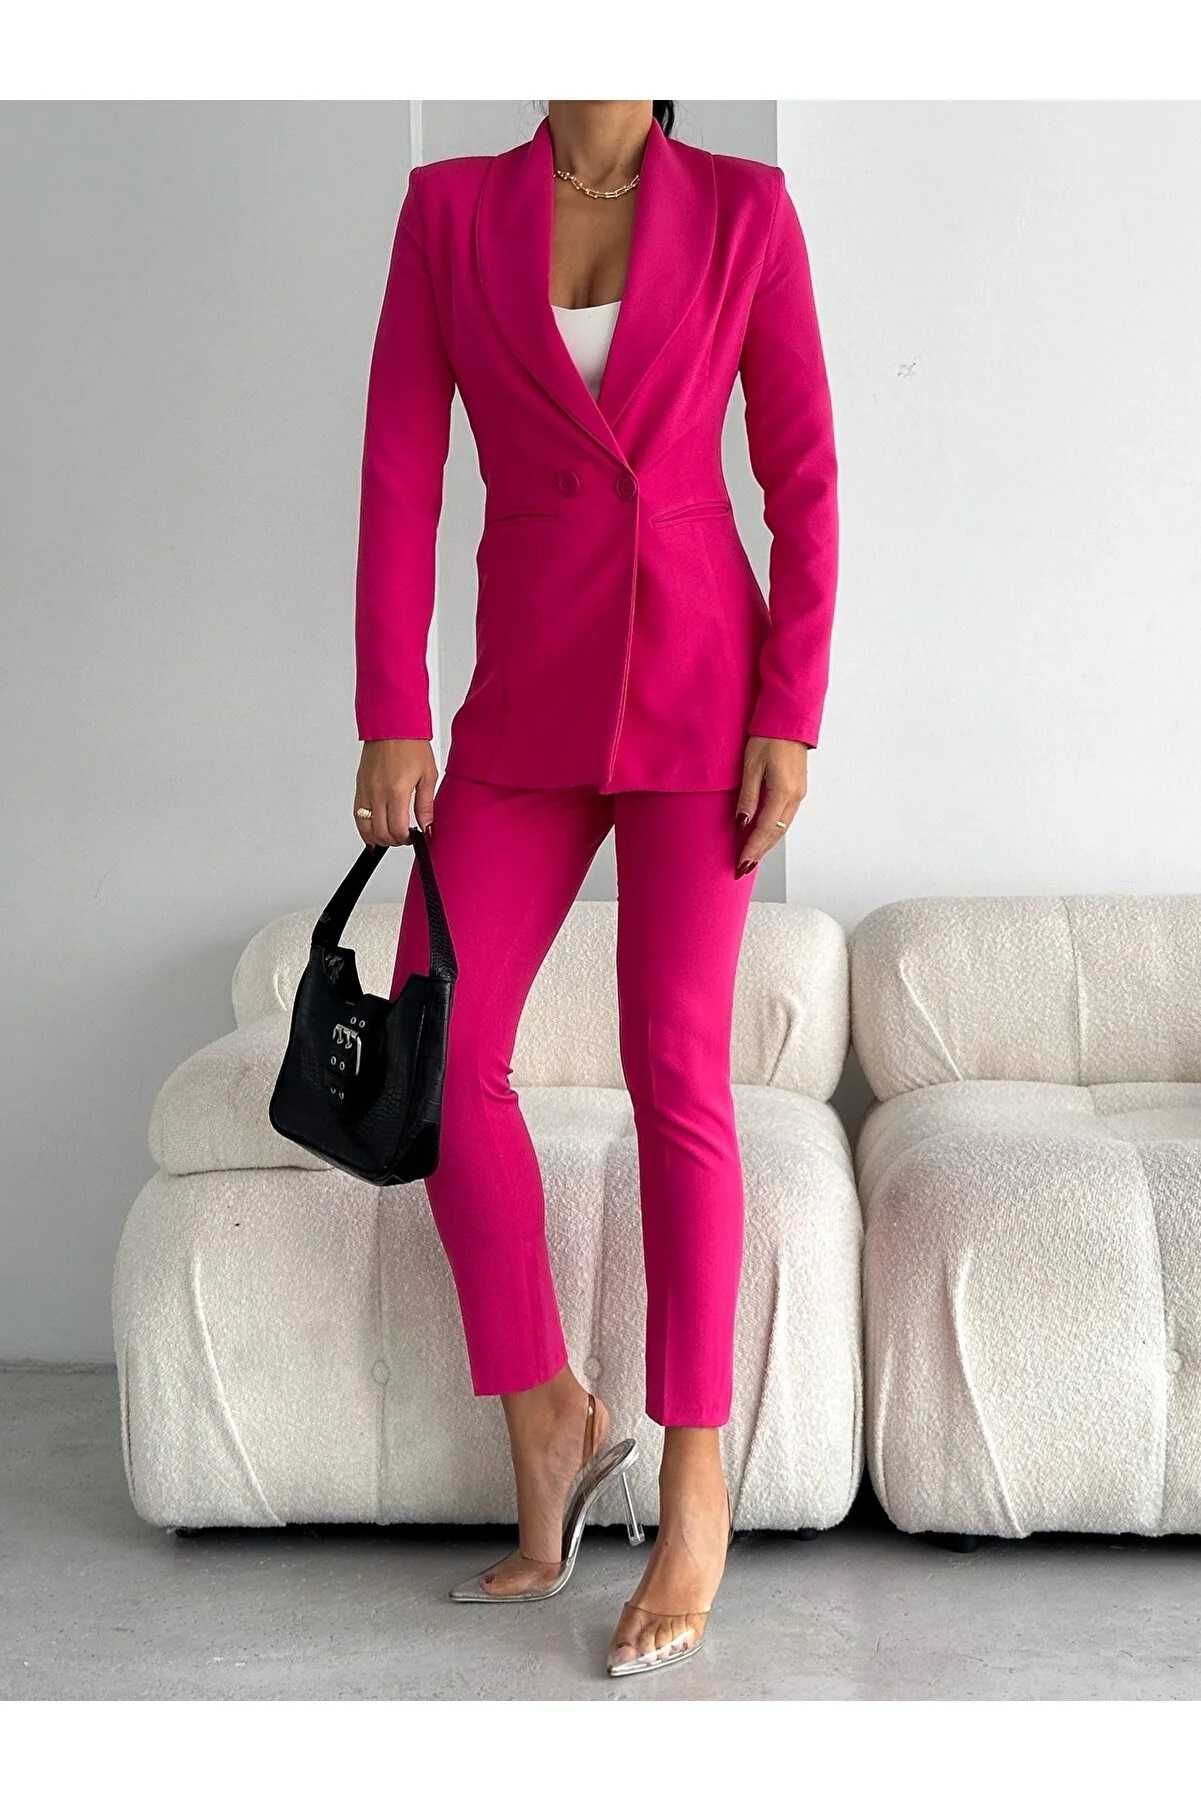 Дамски костюм с панталон и сако, Vitalite, Розов (S-M-L-XL-2XL-3XL)